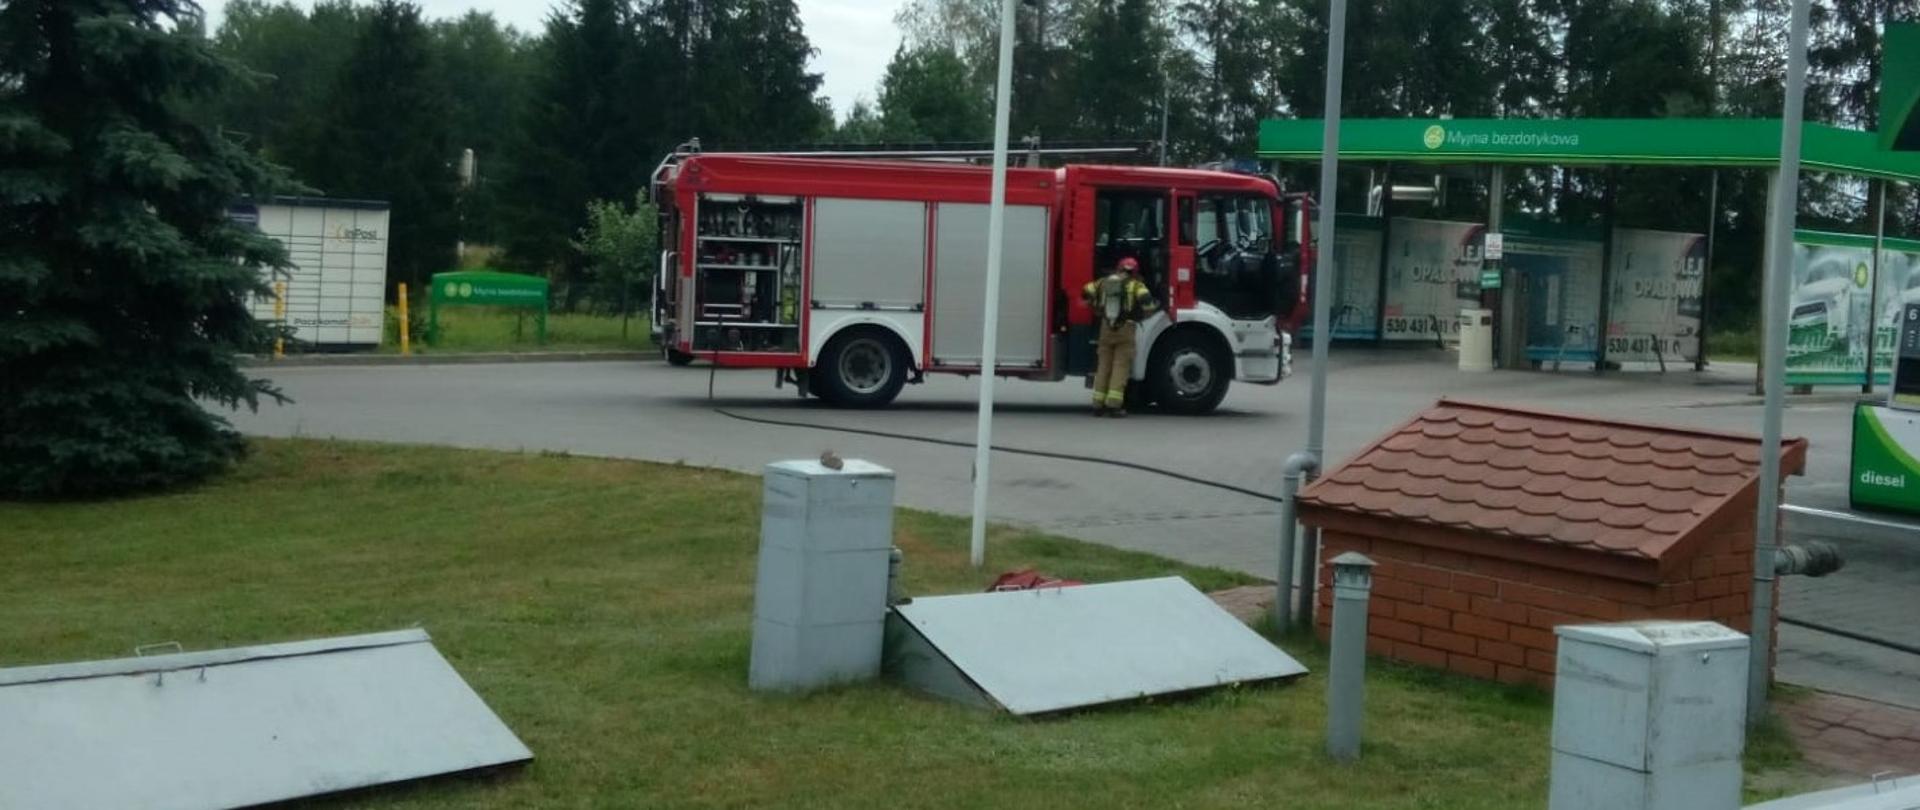 Zdjęcie przedstawia stację benzynową gdzie doszło do zadymienia. Widać zaparkowany samochód pożarniczy do którego podchodzi zabezpieczony w aparat dróg oddechowych strażak. Od samochodu rozłożona jest linia gaśnicza, a na pierwszym planie metalowe pokrywy komór dystrybutorów.